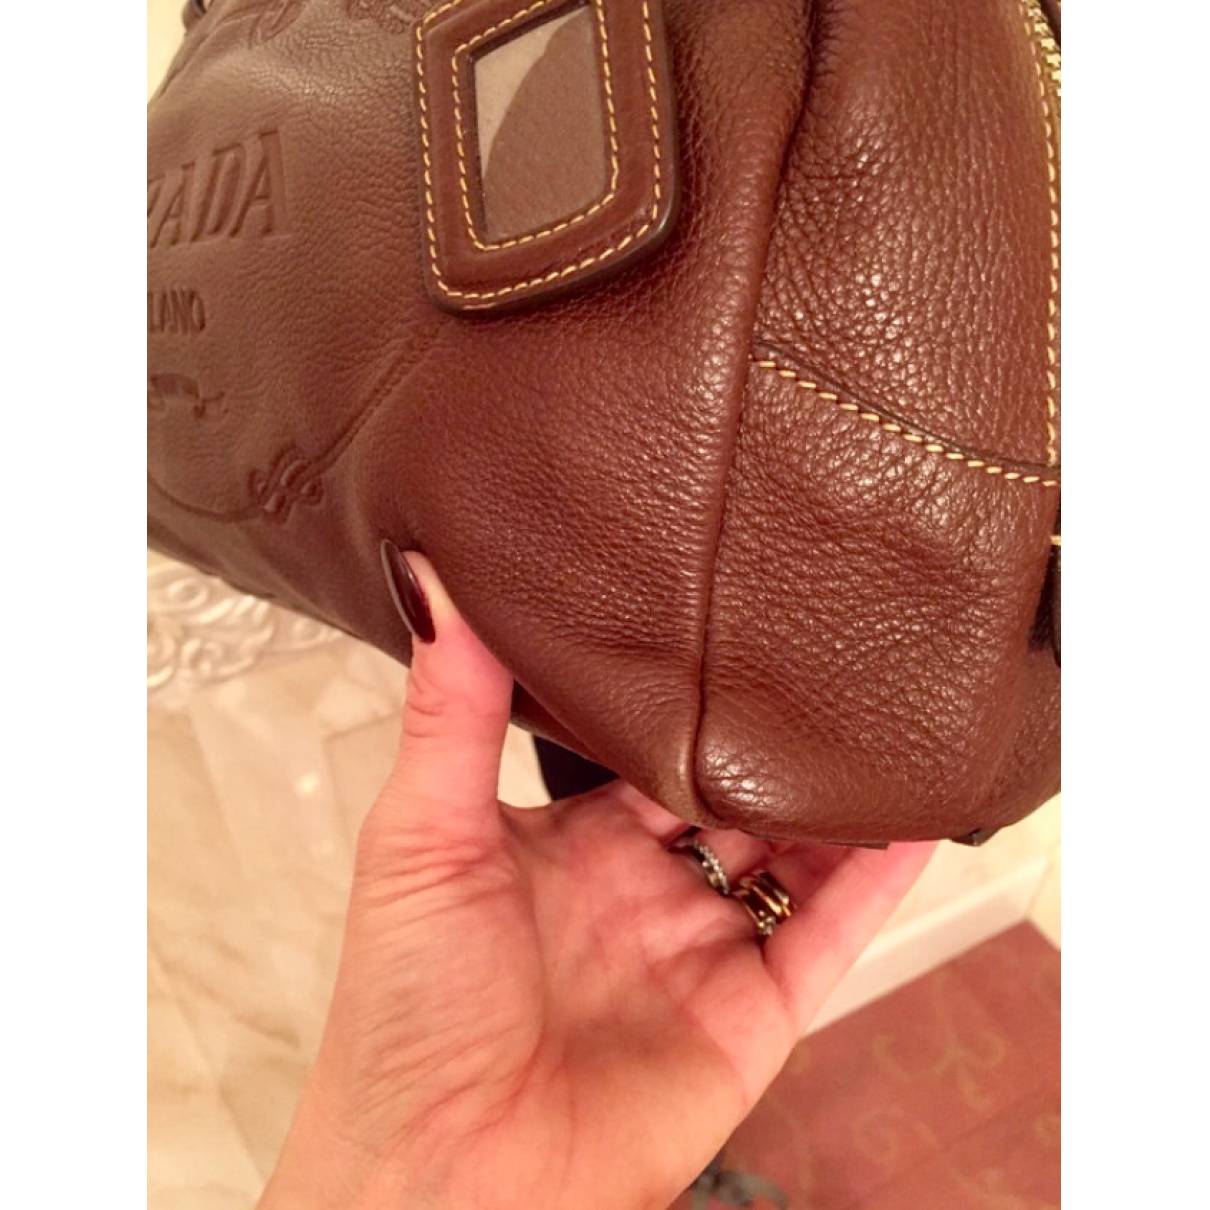 Prada Brown Leather Handbag  Leather handbags, Bags, Leather